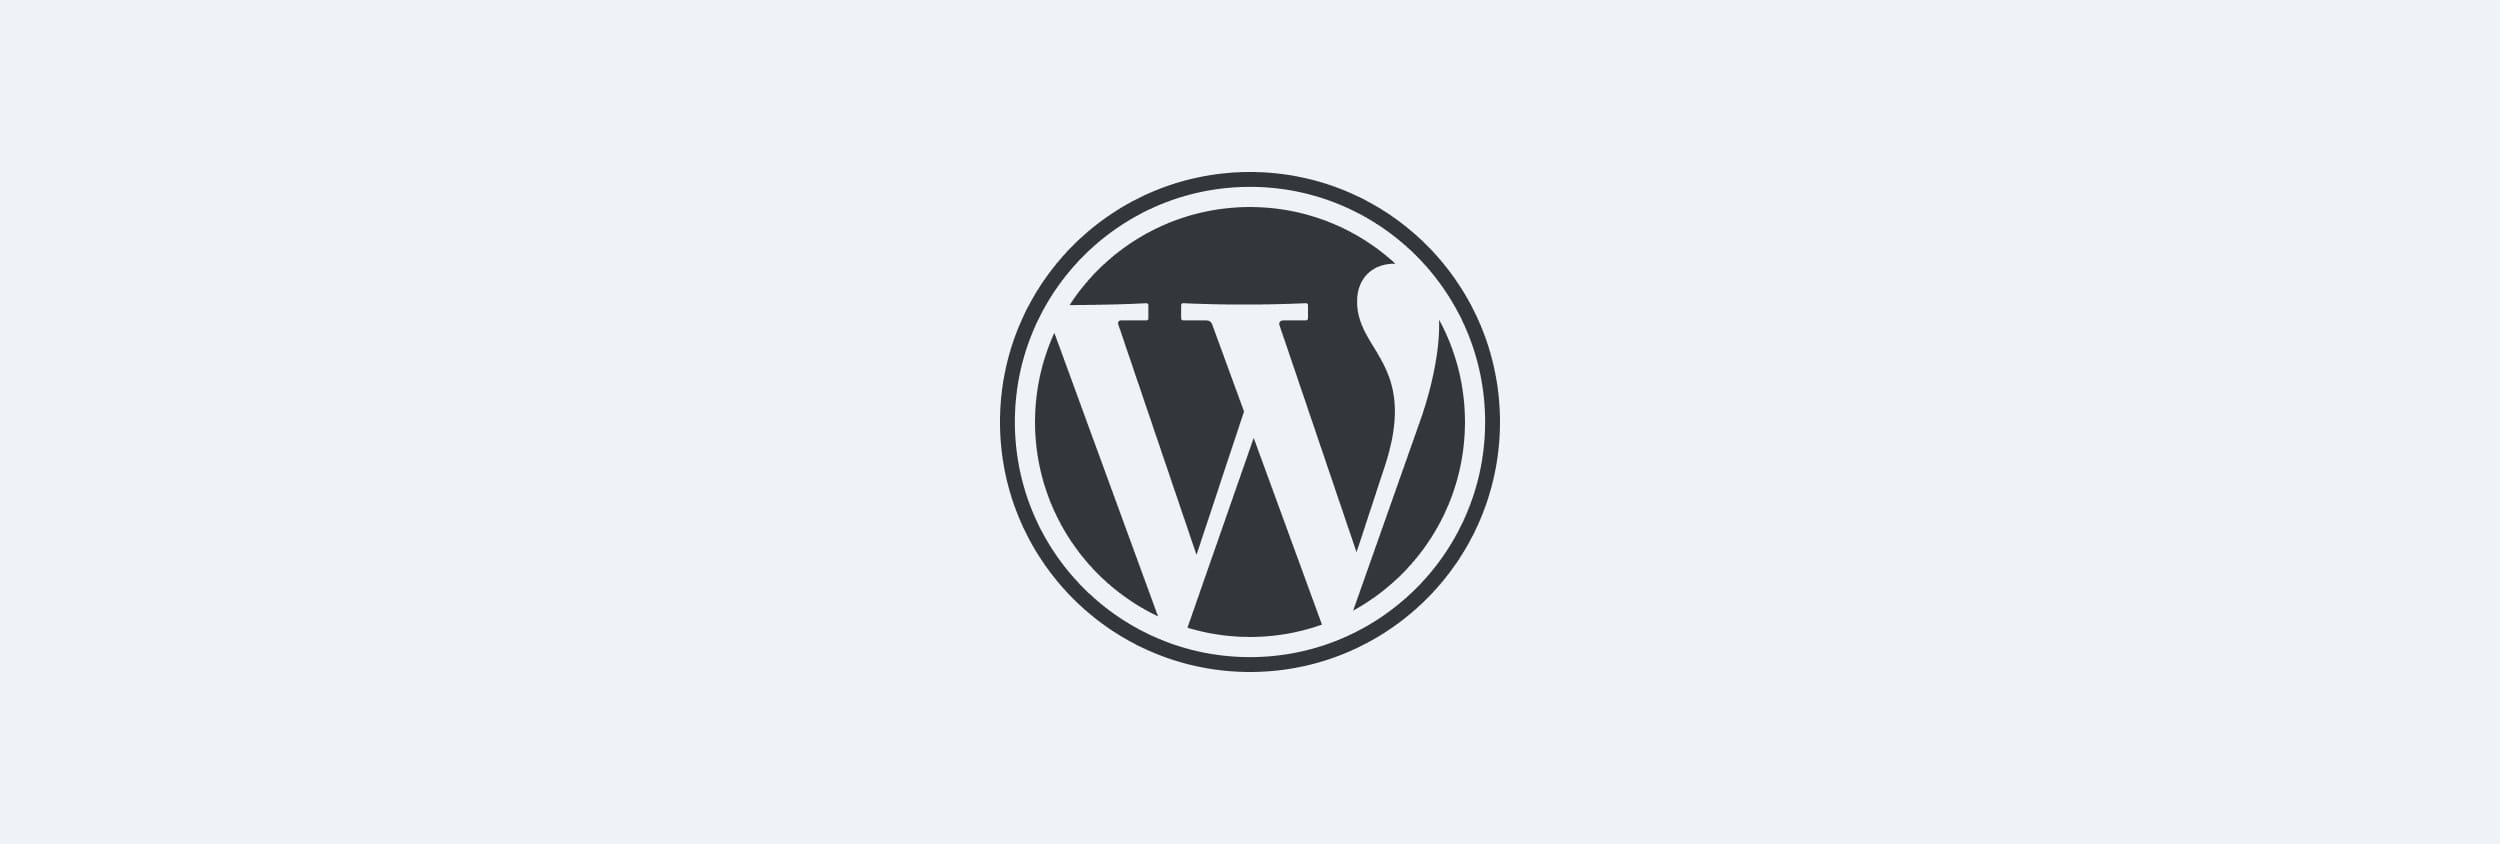 Wordpress umziehen: So klappt die Migration deiner Website